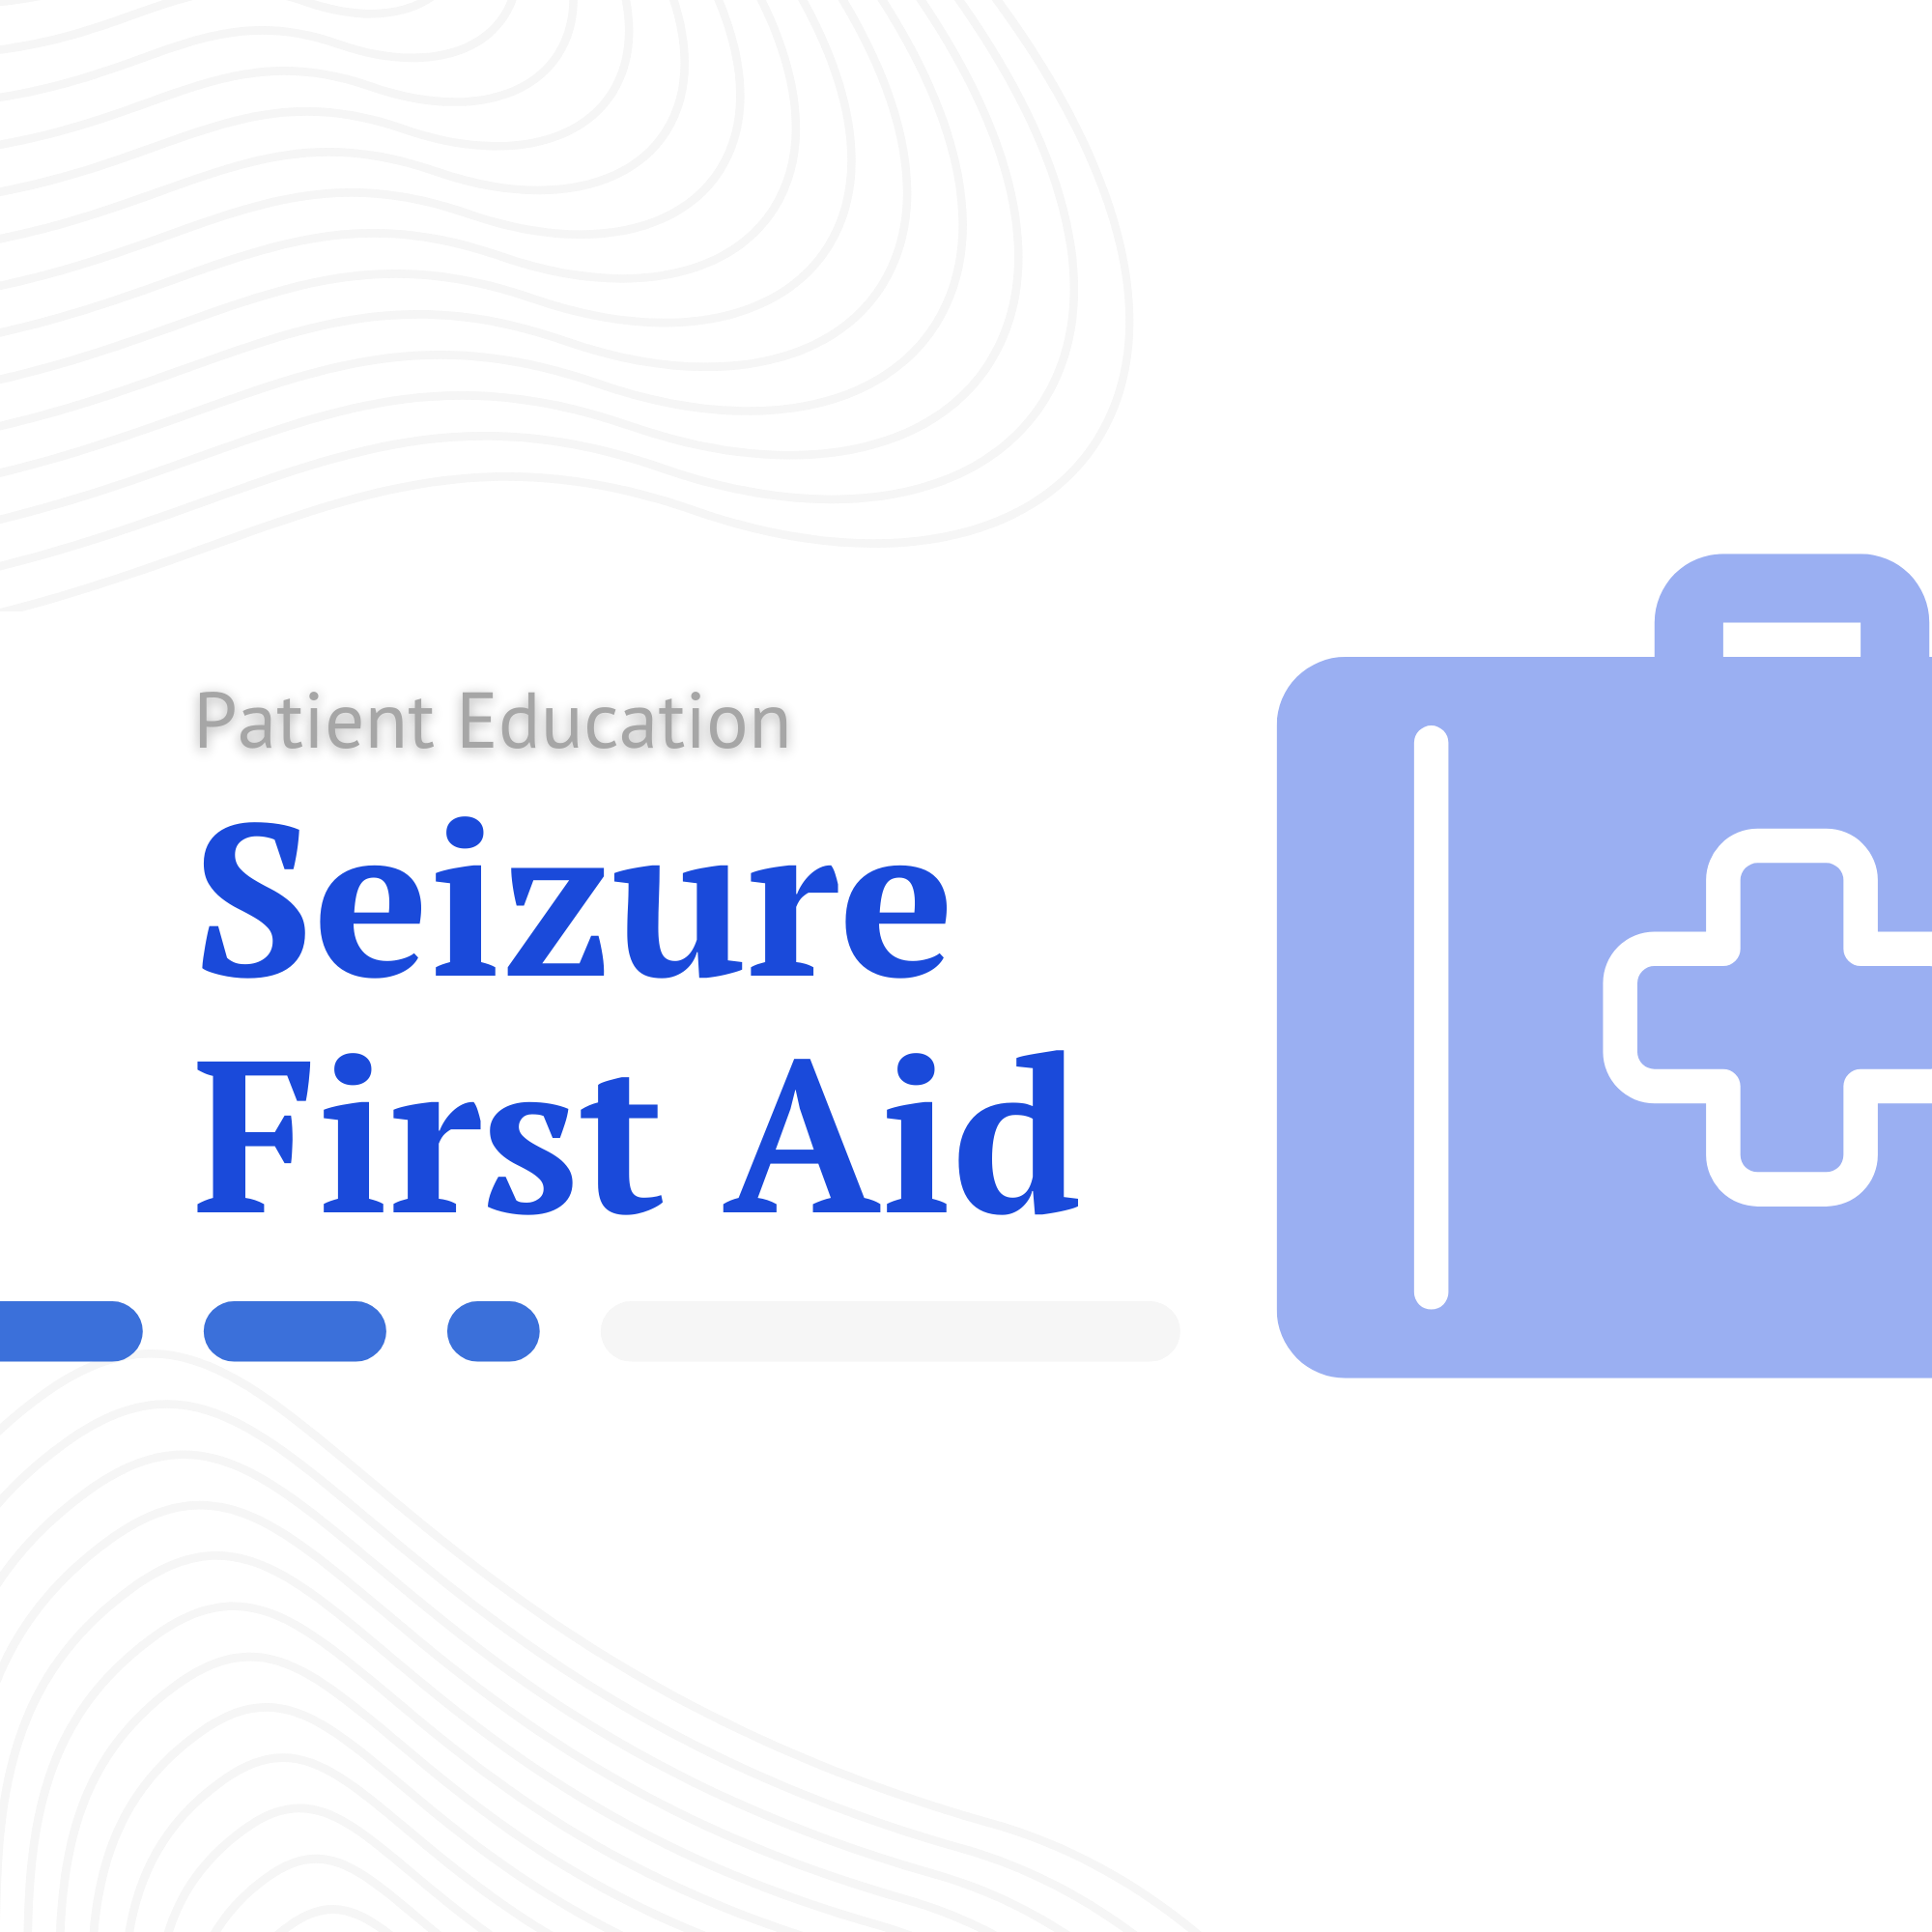 Seizure - First Aid